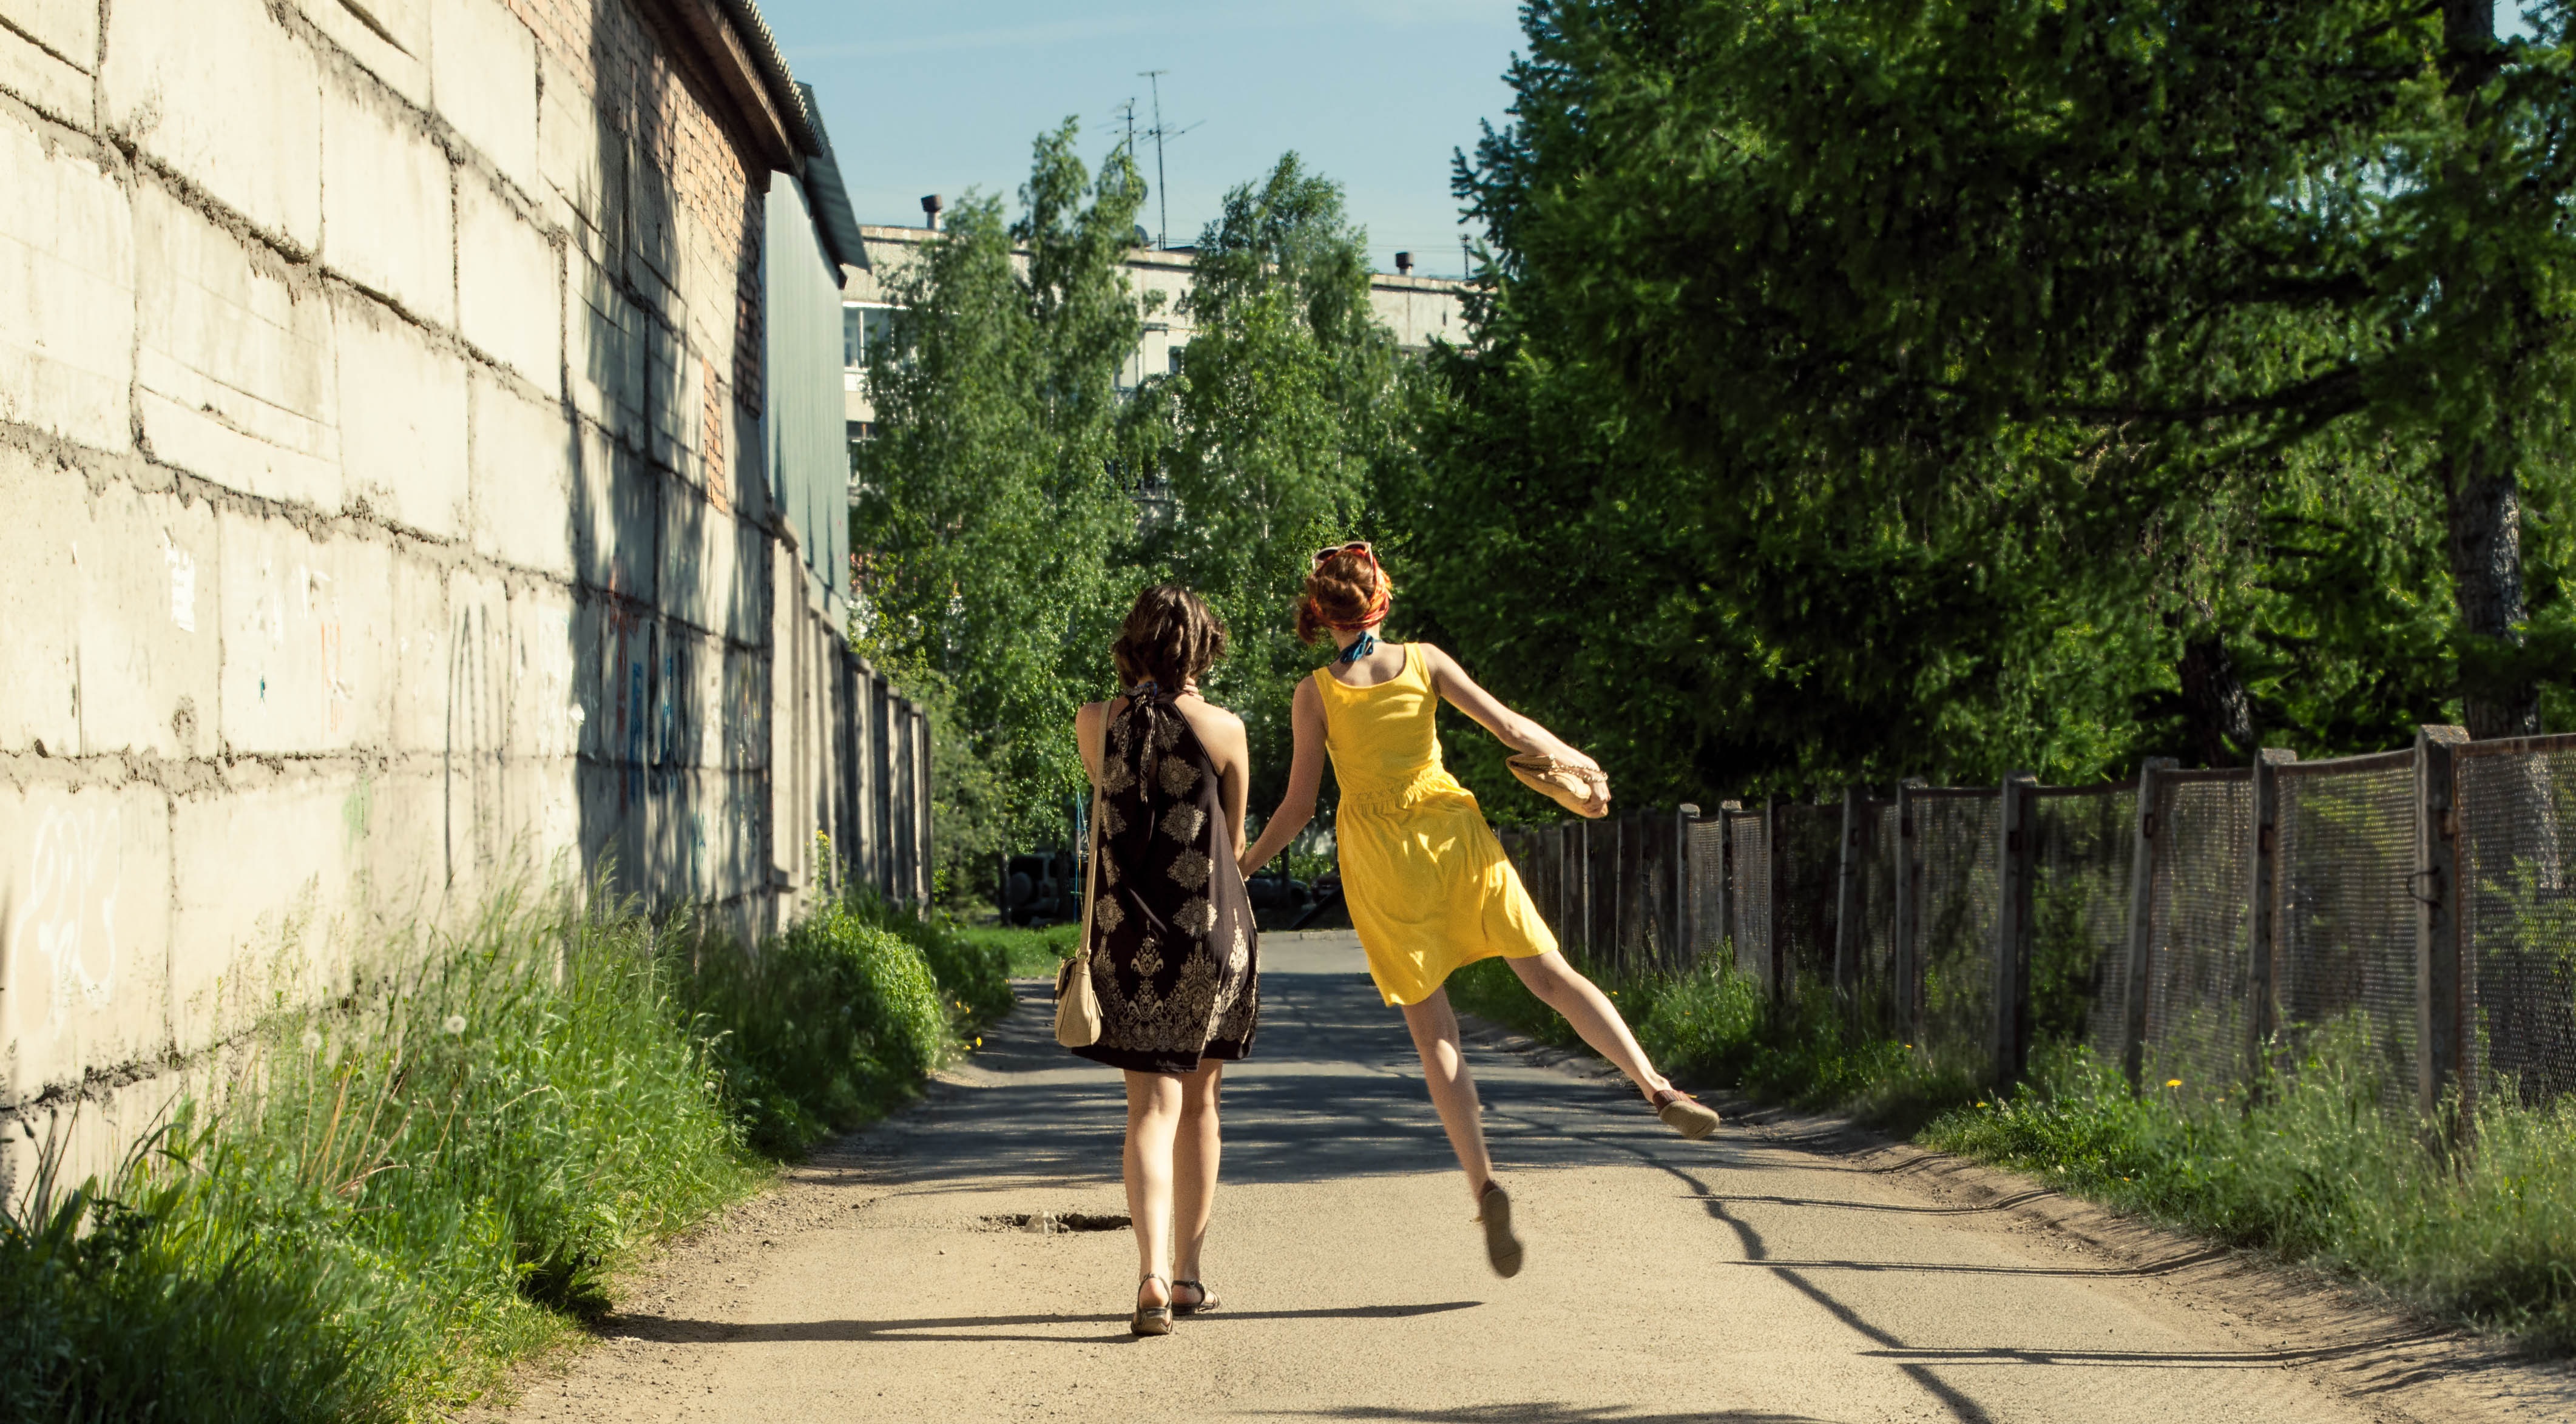 Springende Frauen, eine mit einem gelben Kleid